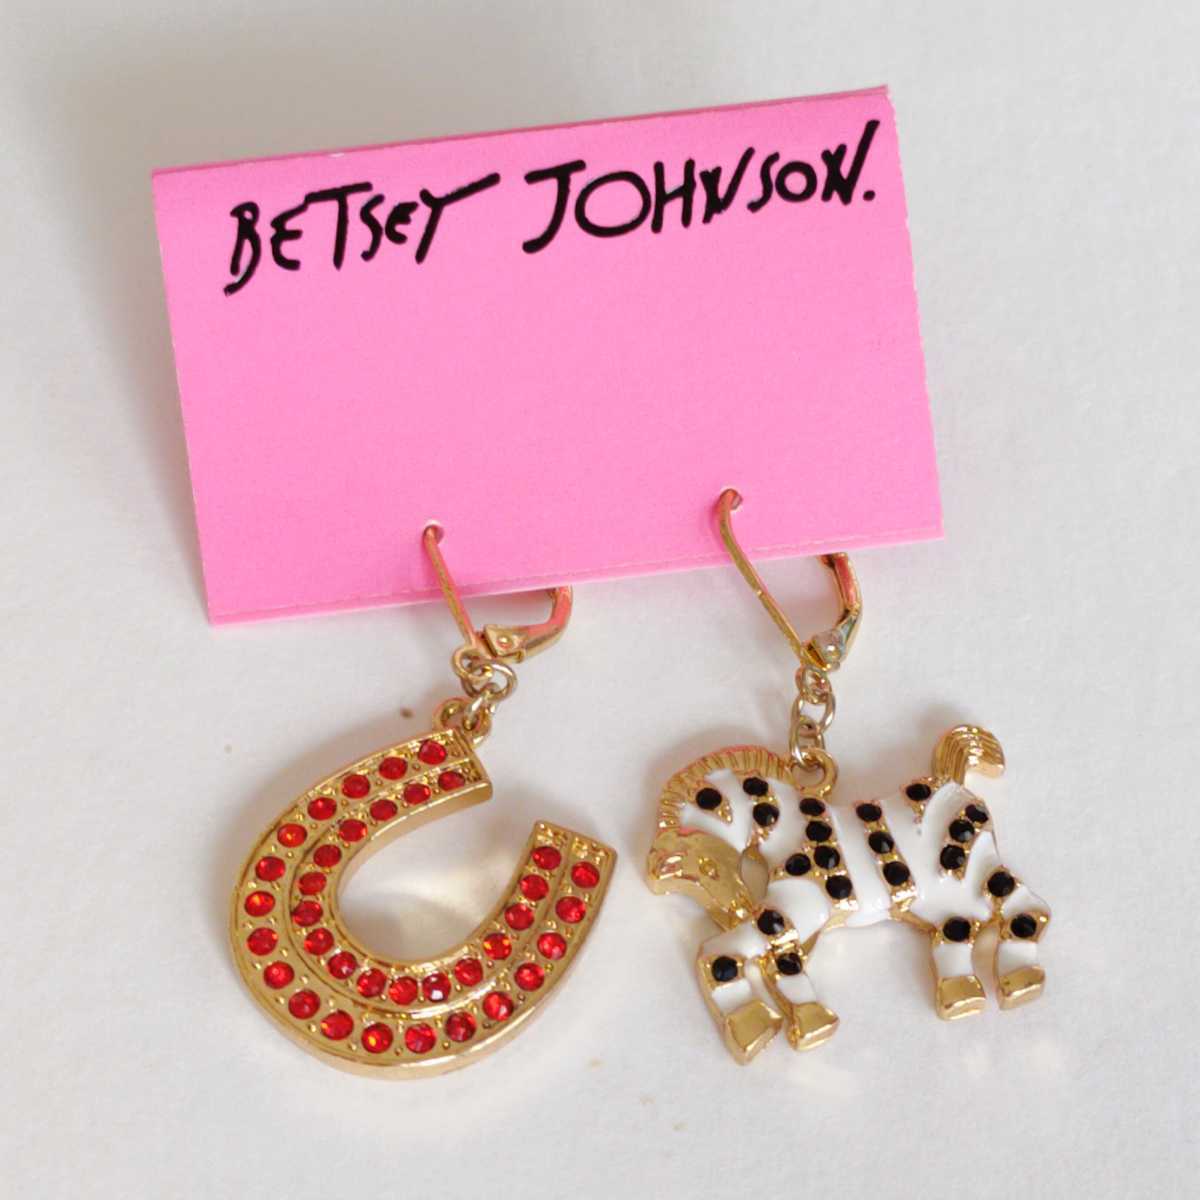  new goods BETSEY JOHNSON zebra x hose shoe. earrings 